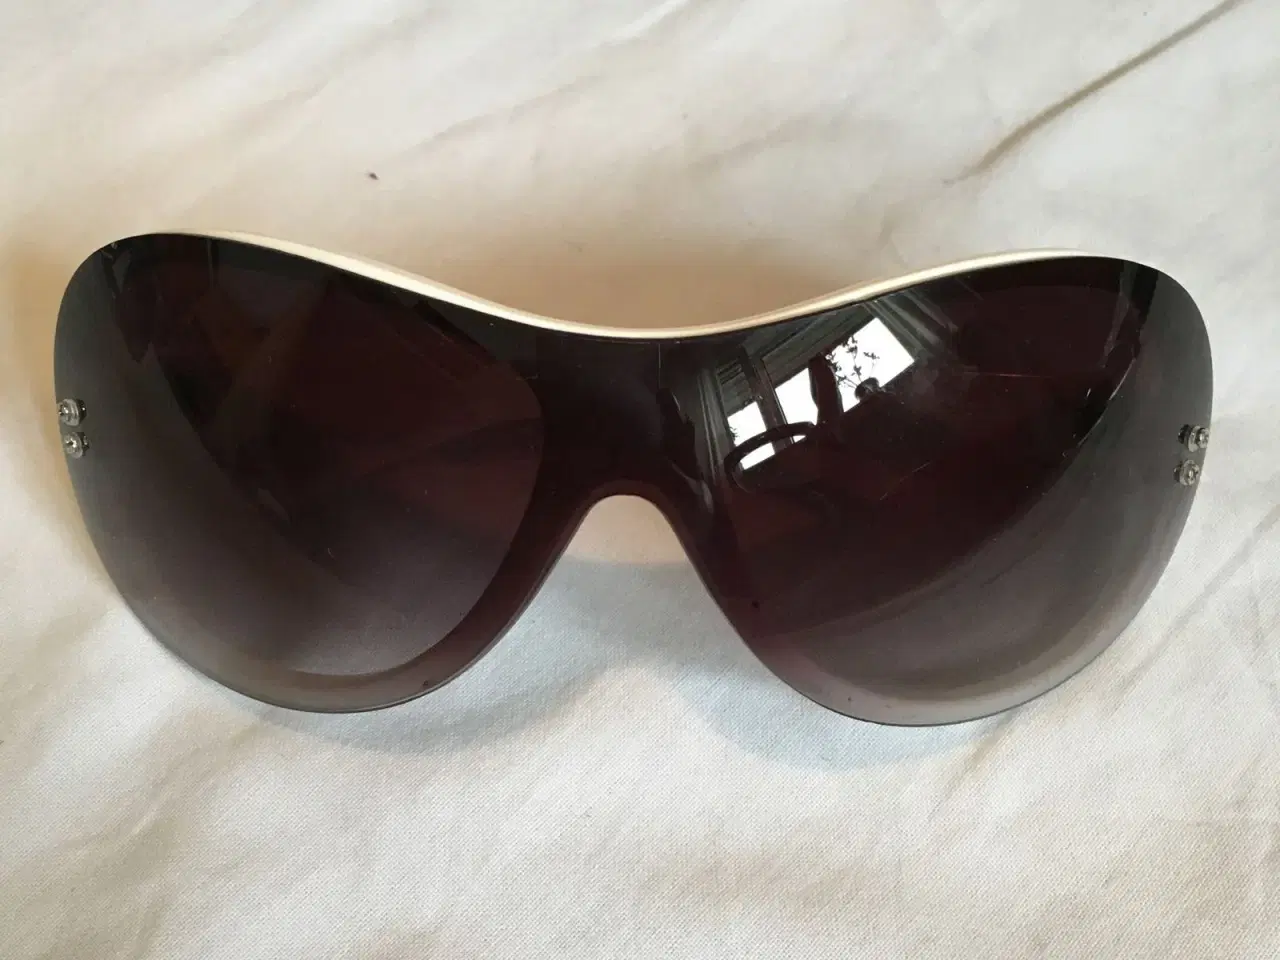 Billede 2 - Diverse solbriller til salg